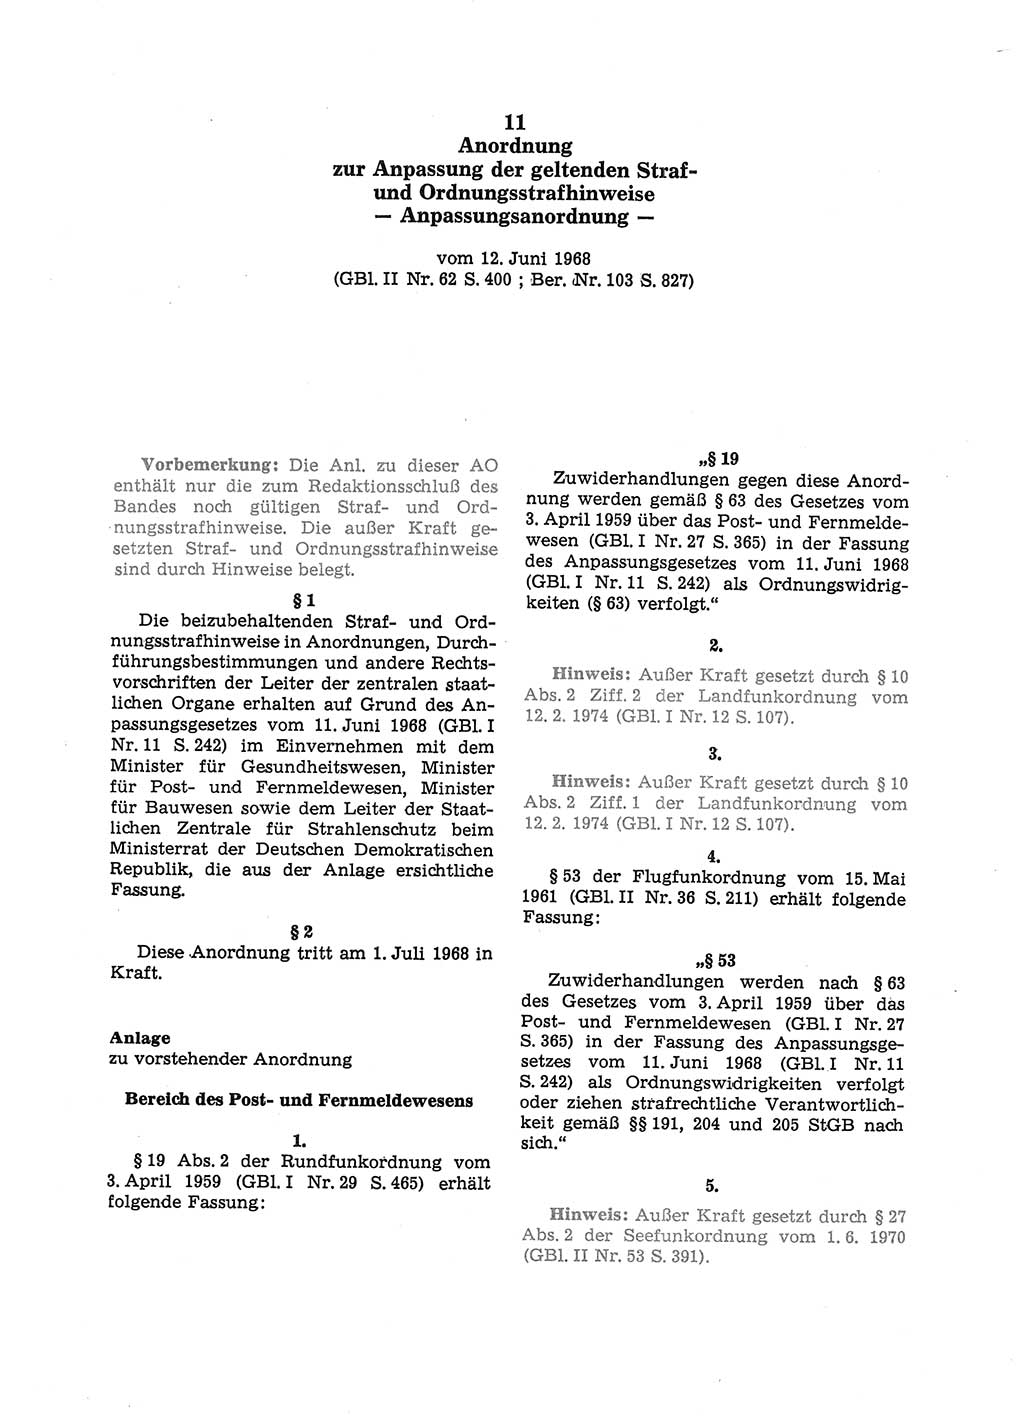 Strafgesetzbuch (StGB) der Deutschen Demokratischen Republik (DDR) und angrenzende Gesetze und Bestimmungen 1975, Seite 217 (StGB DDR Ges. Best. 1975, S. 217)